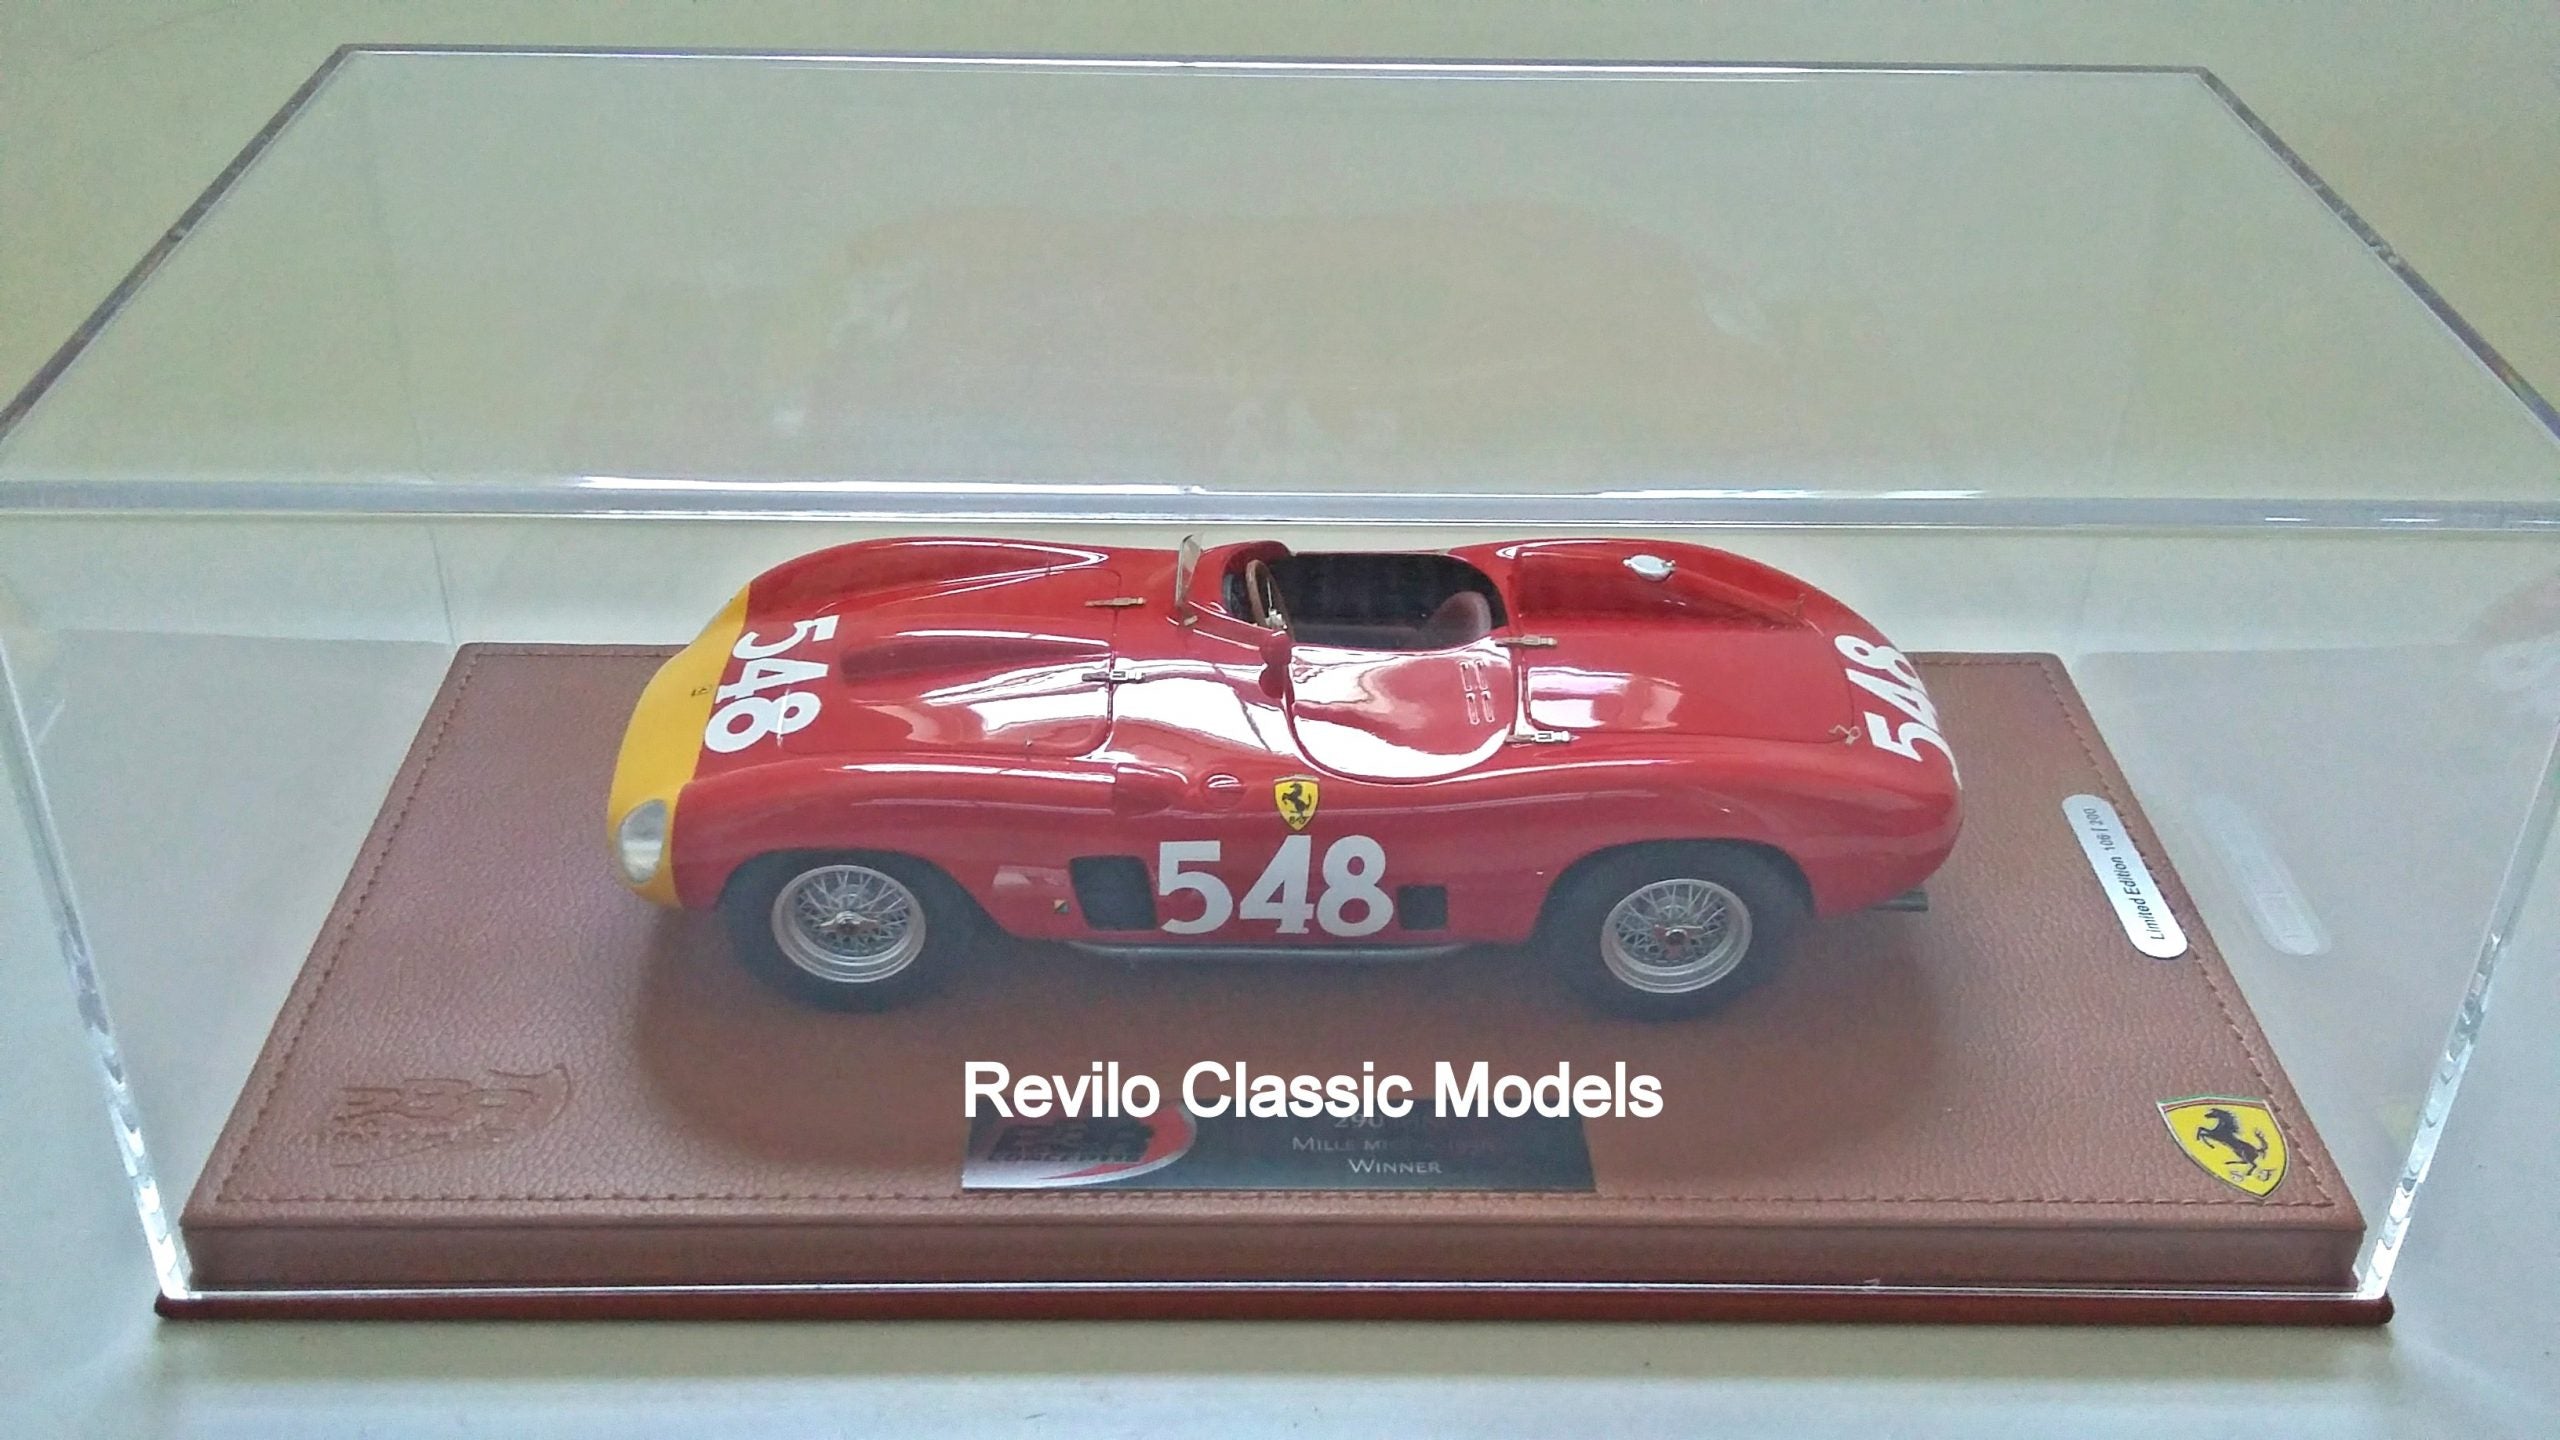 BBR Ferrari 290MM 1956 Mille Miglia winner 1:18 scale